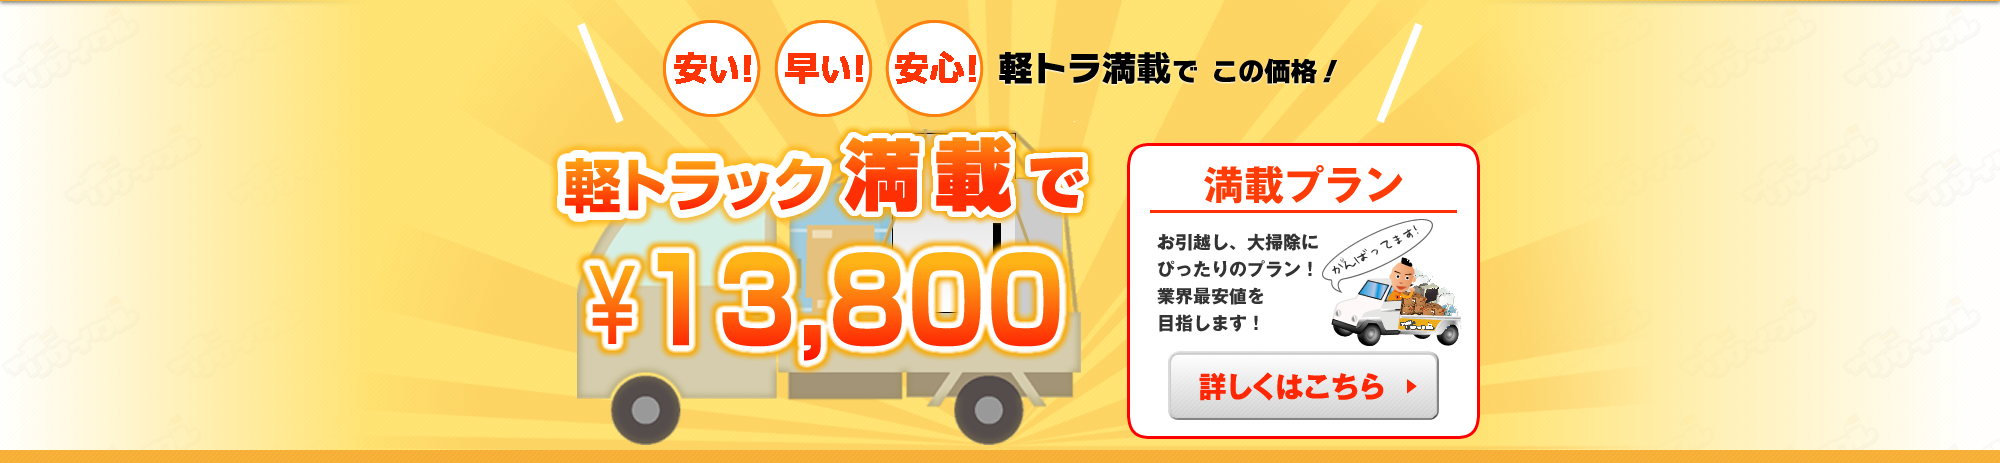 軽トラック満載で13,800円!!京都の廃品回収、粗大ごみ、廃品処理、大型ごみはヤッホーリサイクルにお任せ下さい！